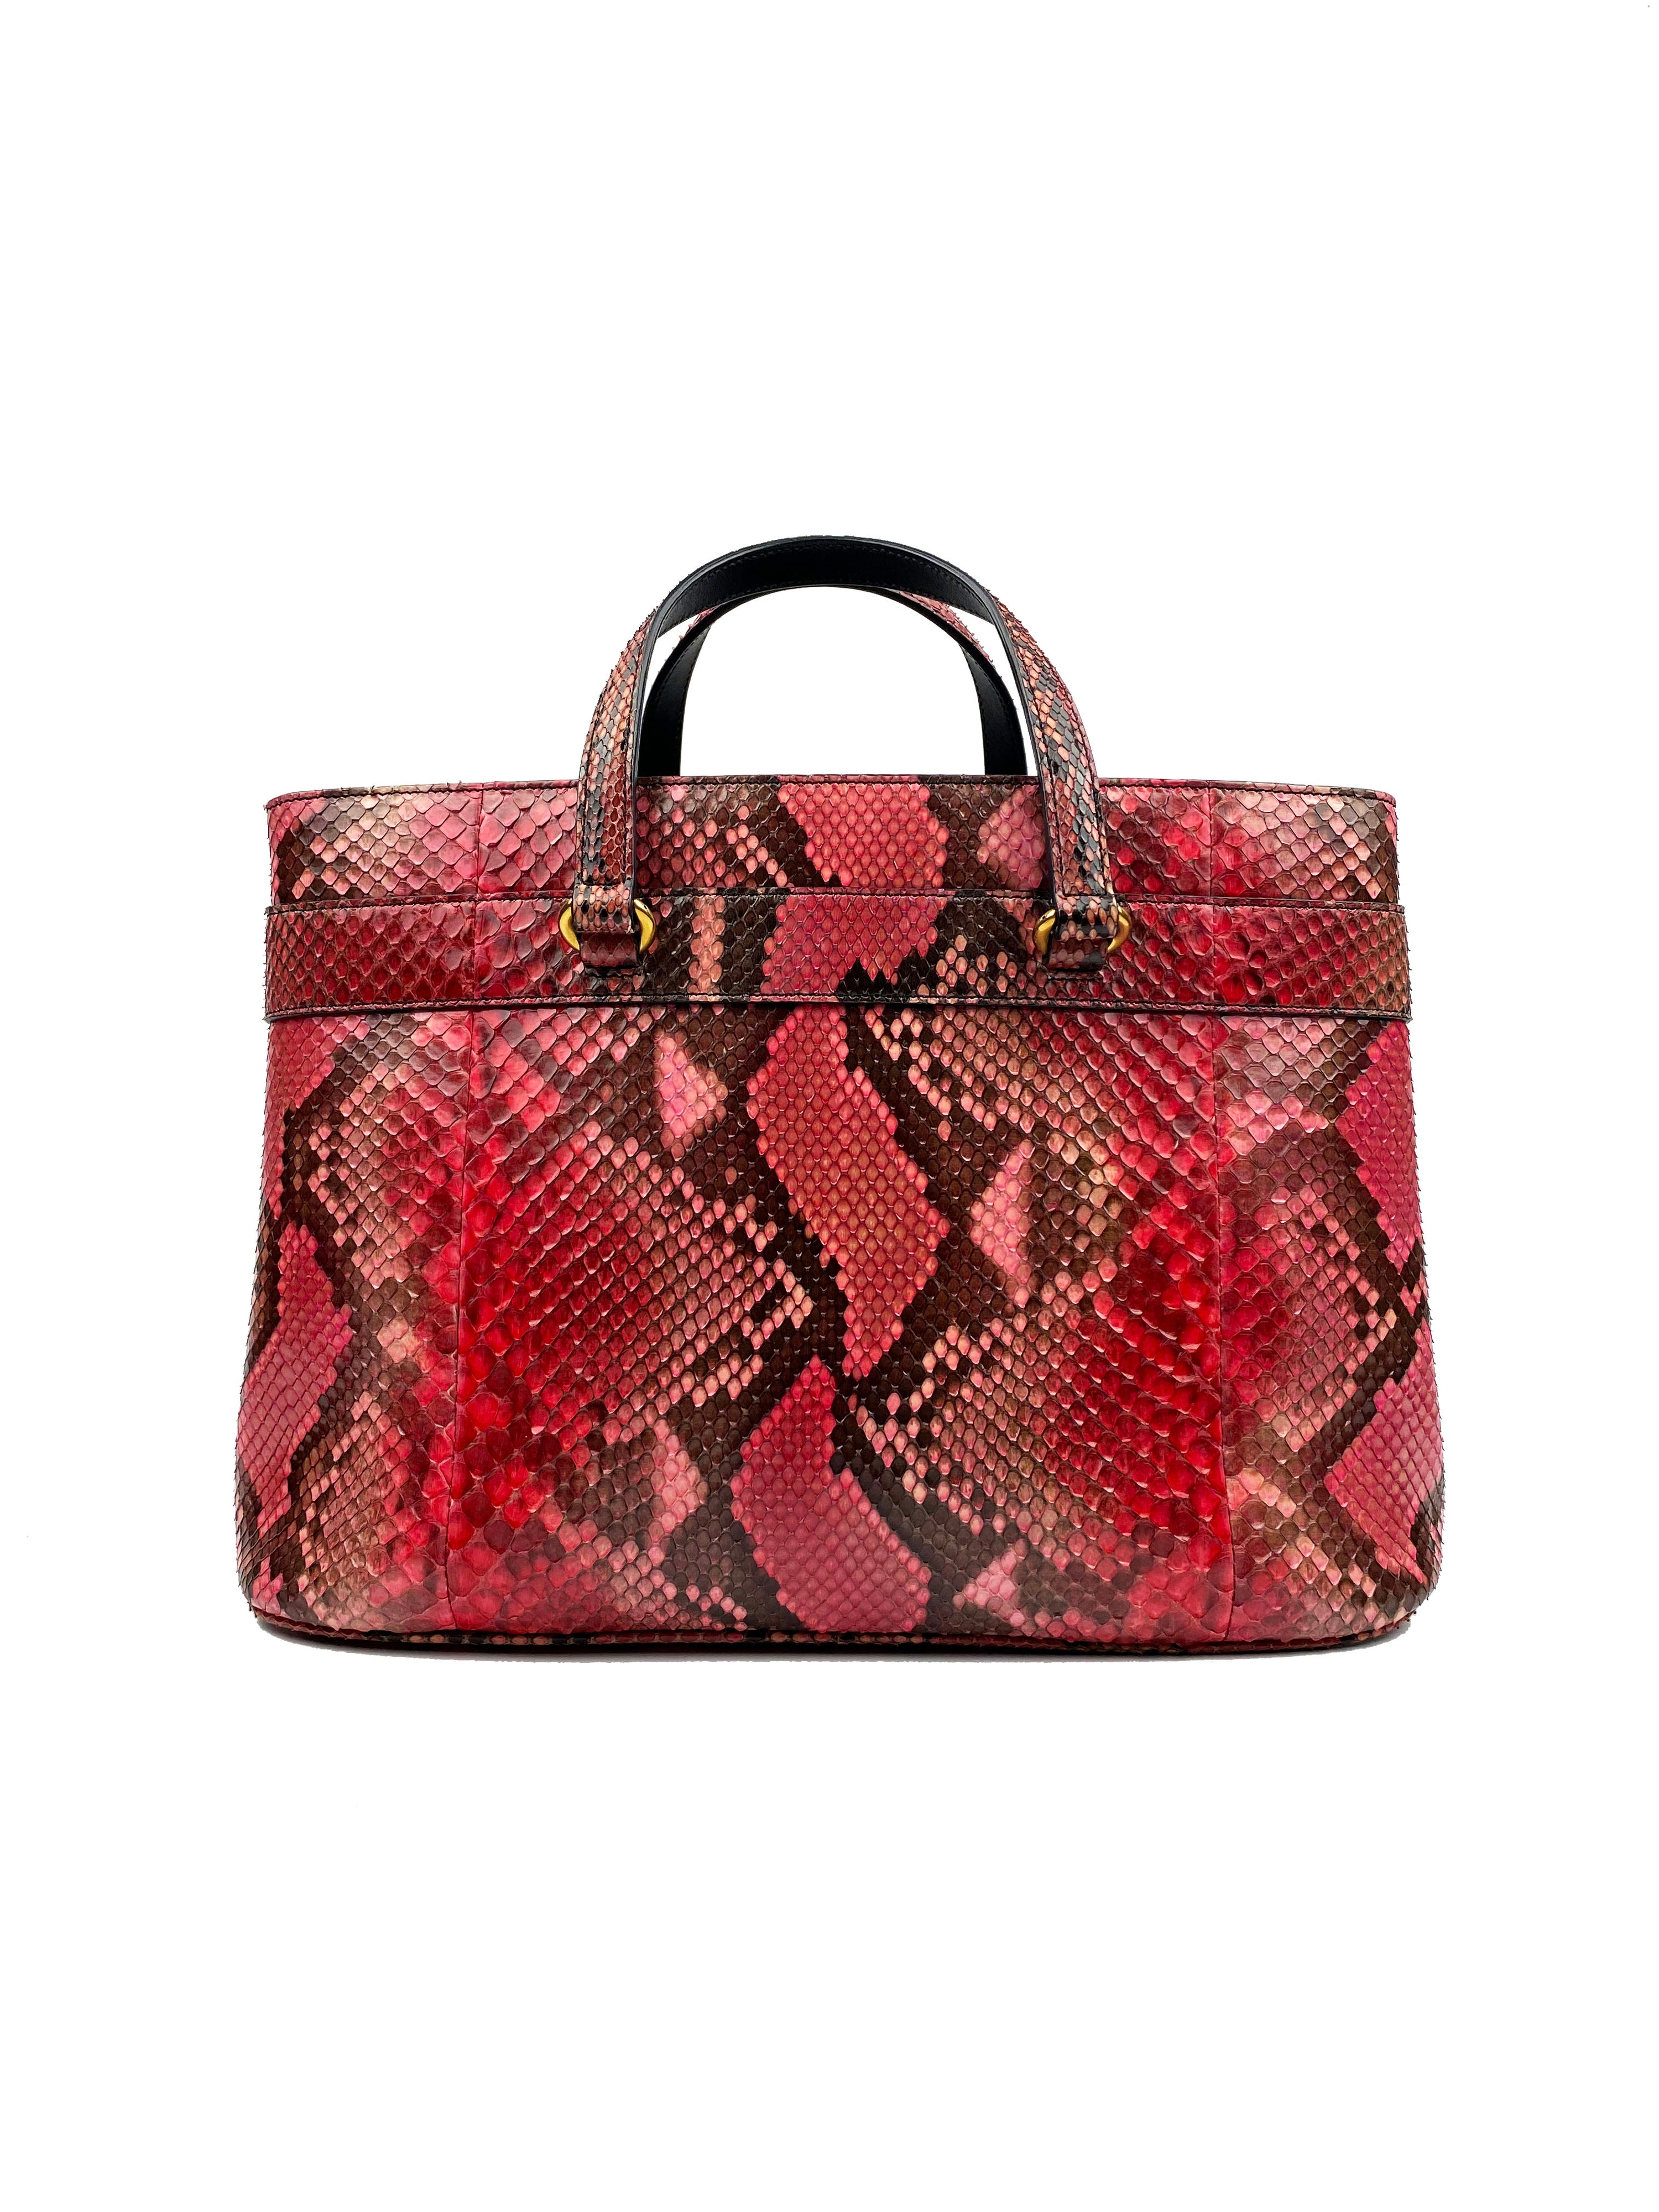 Gucci Begonia Pink Python Bag